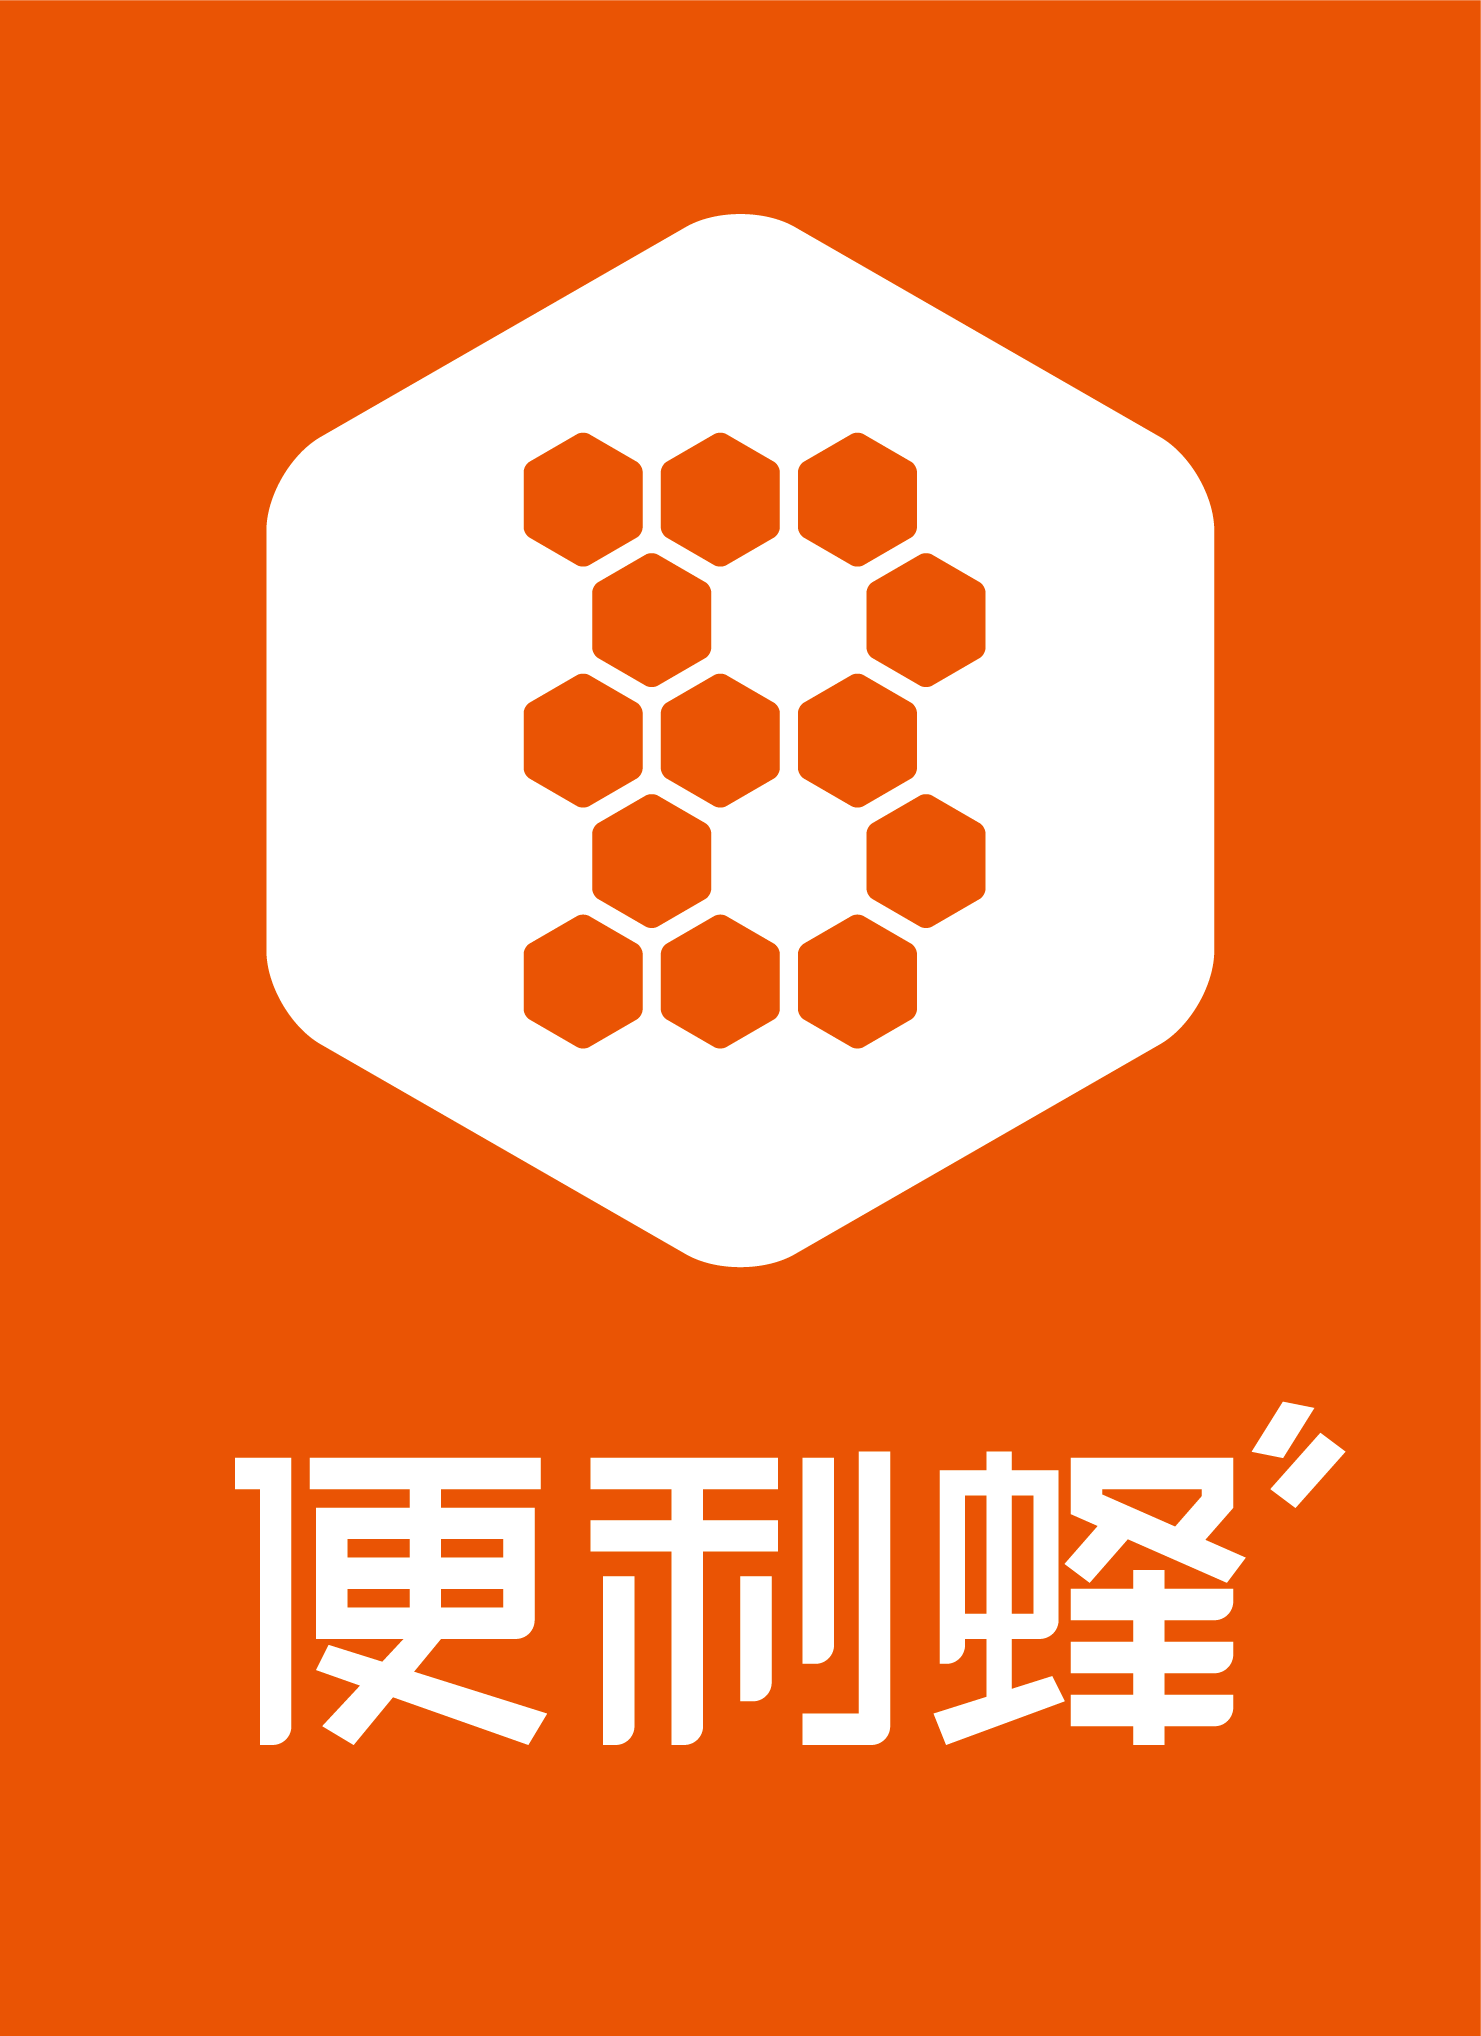 北京自由蜂电子商务有限公司(简称"便利蜂)于2016